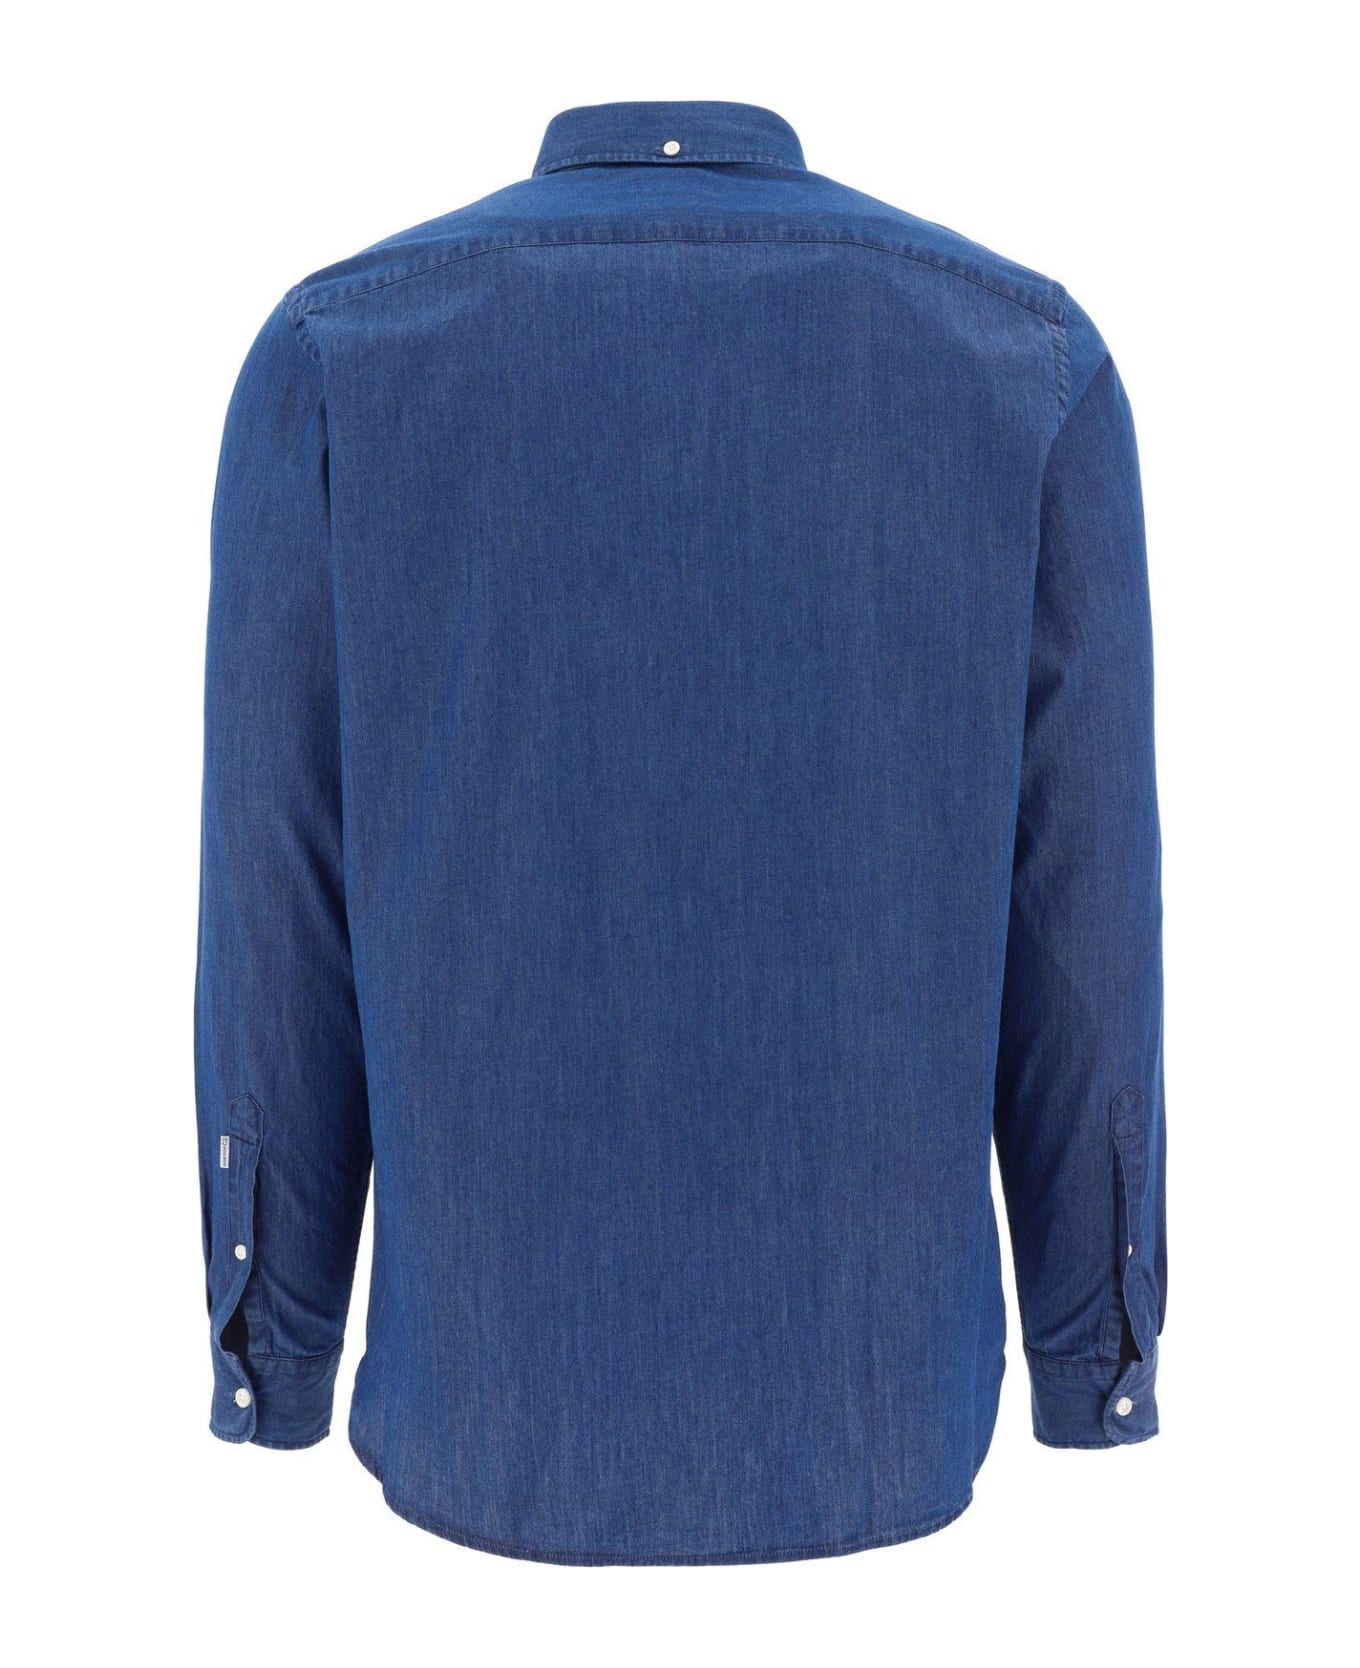 Woolrich Buttoned Long-sleeved Shirt - Light Indigo シャツ